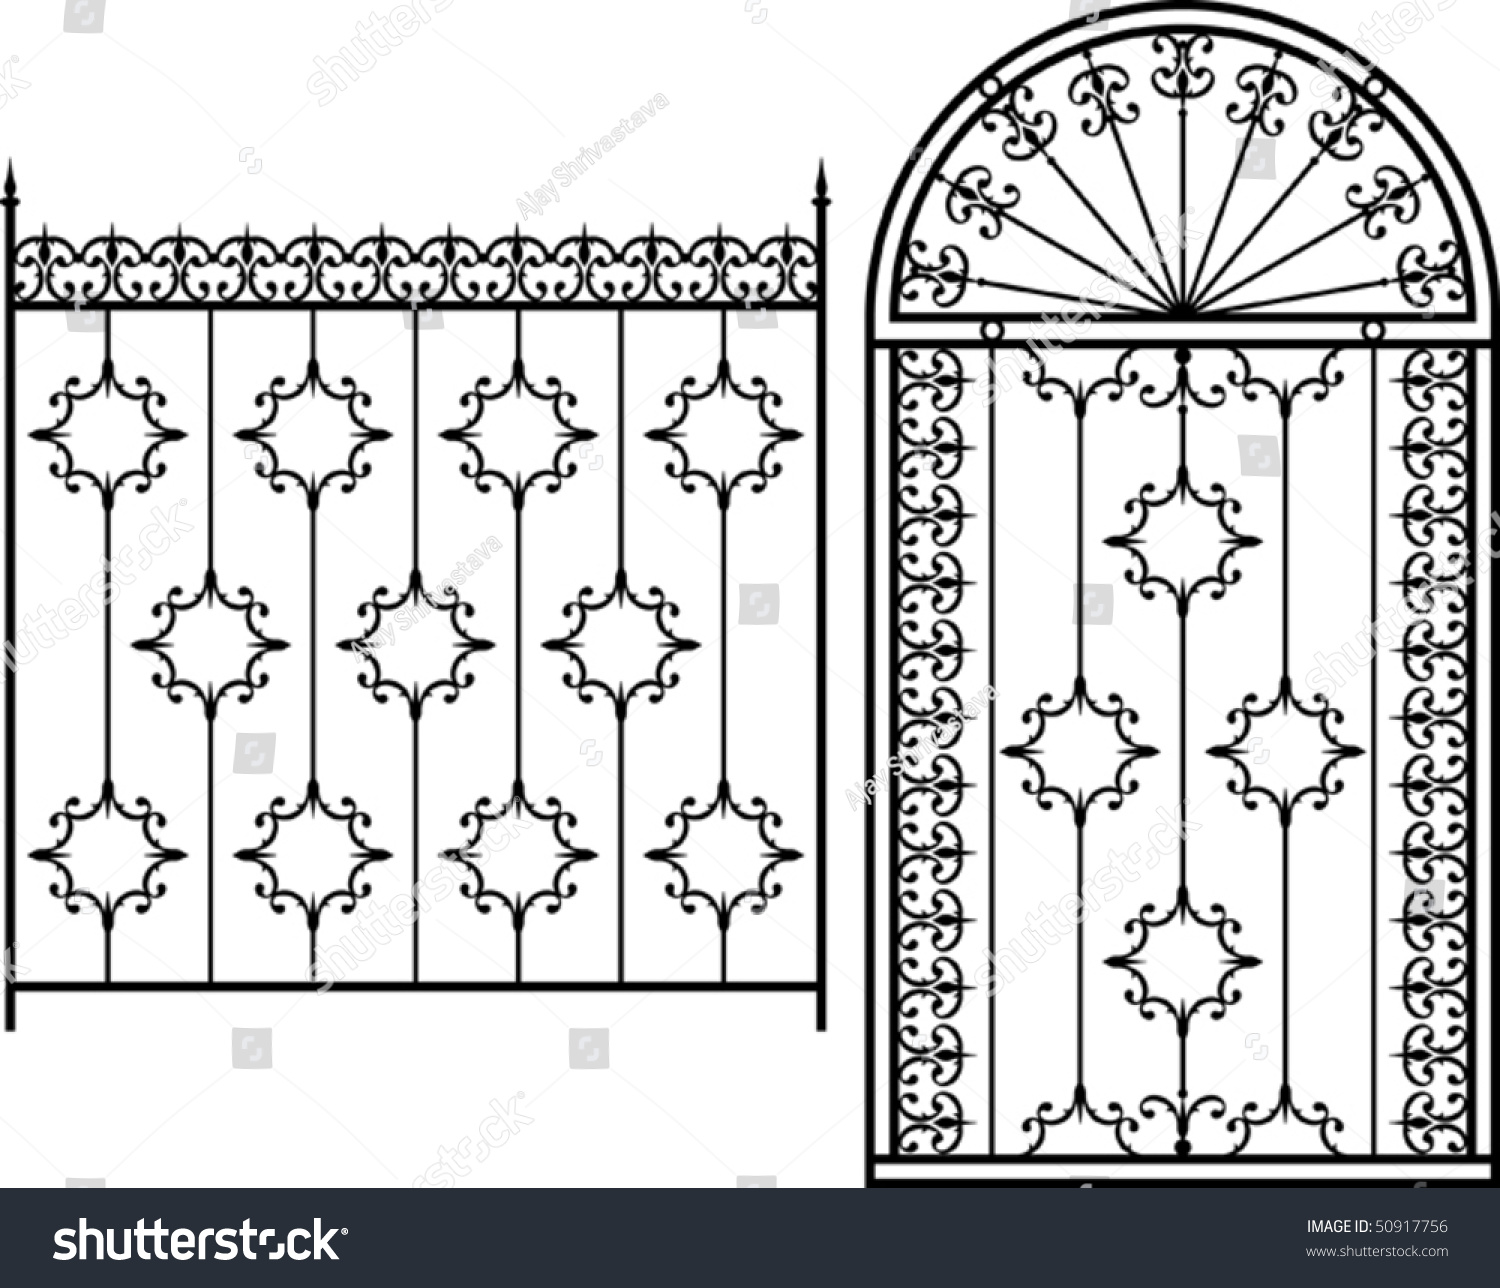 Богатырские ворота рисунок